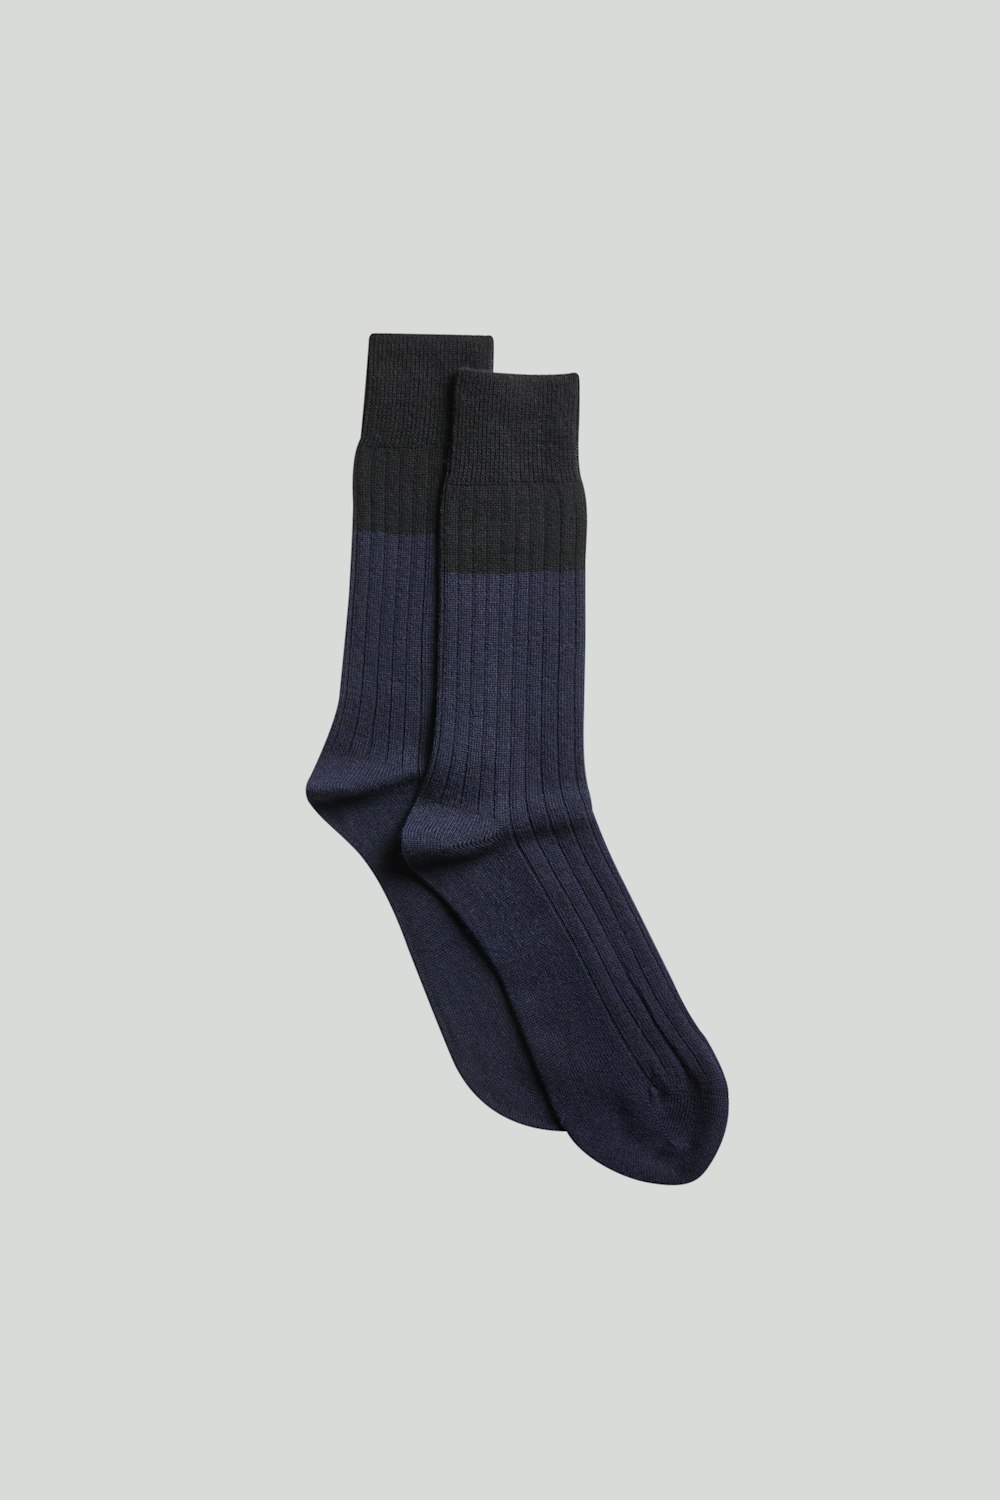 Sock Ten 9138 